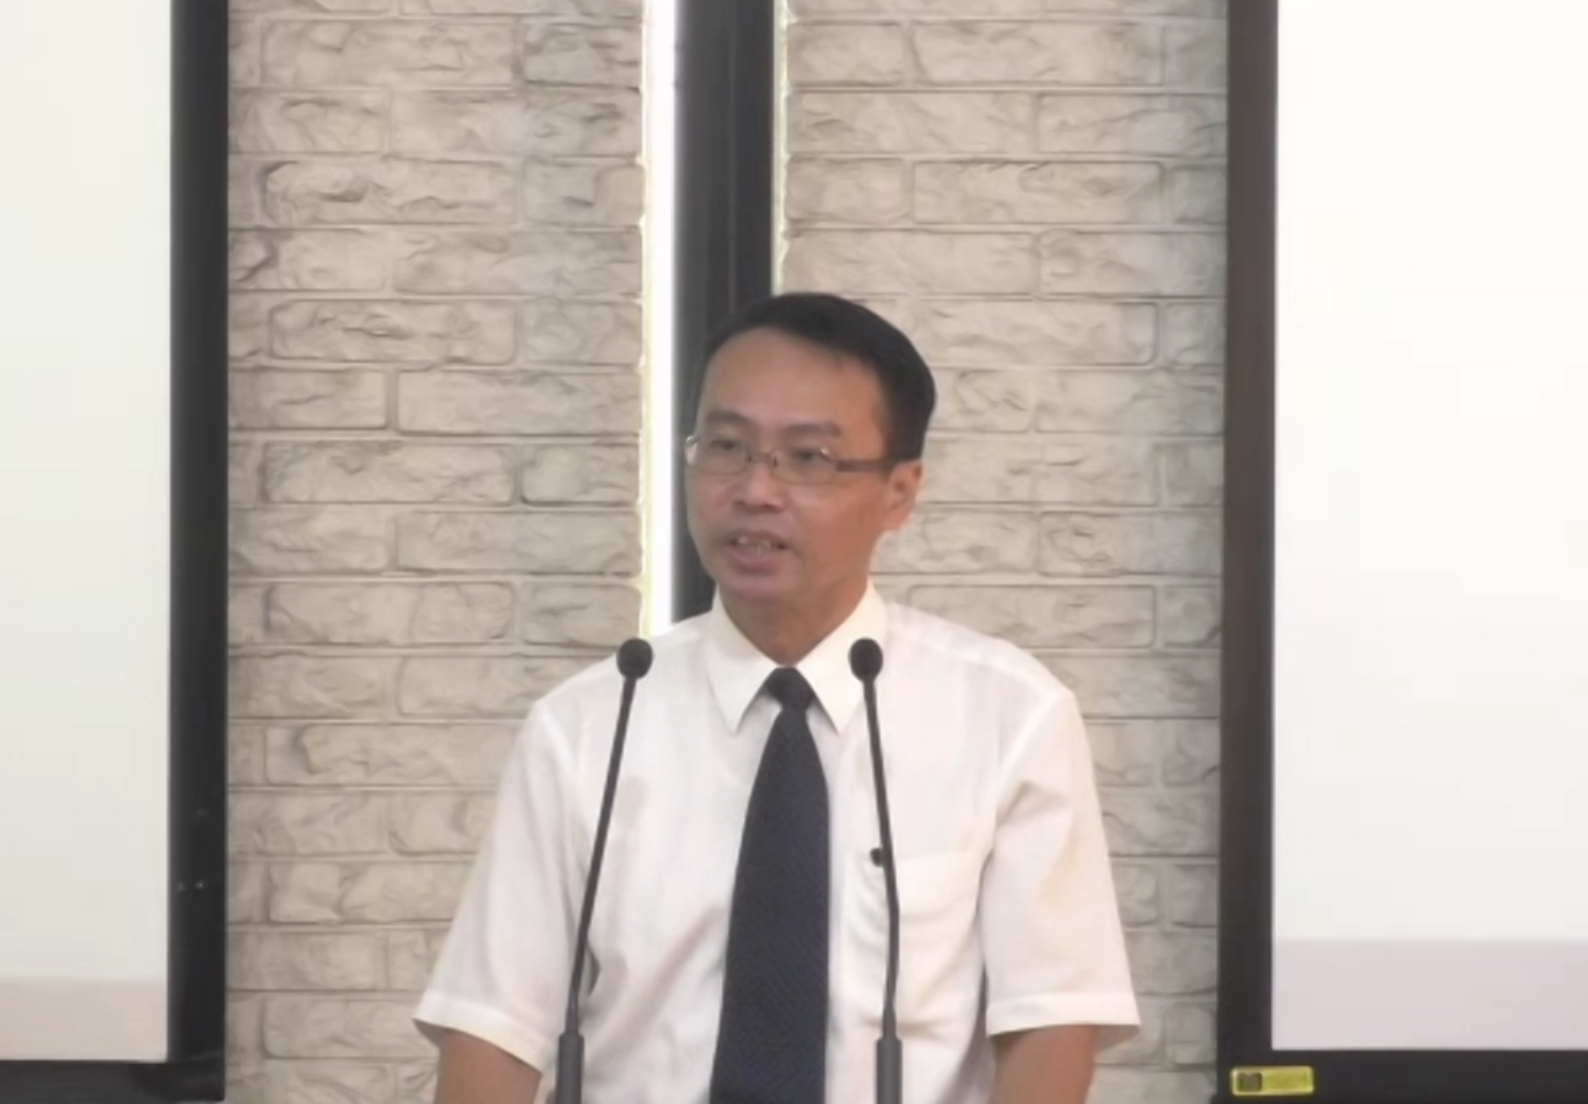 中華信義神學院專任教師陳冠賢談「停滯蕭條中的靈性挑戰」。